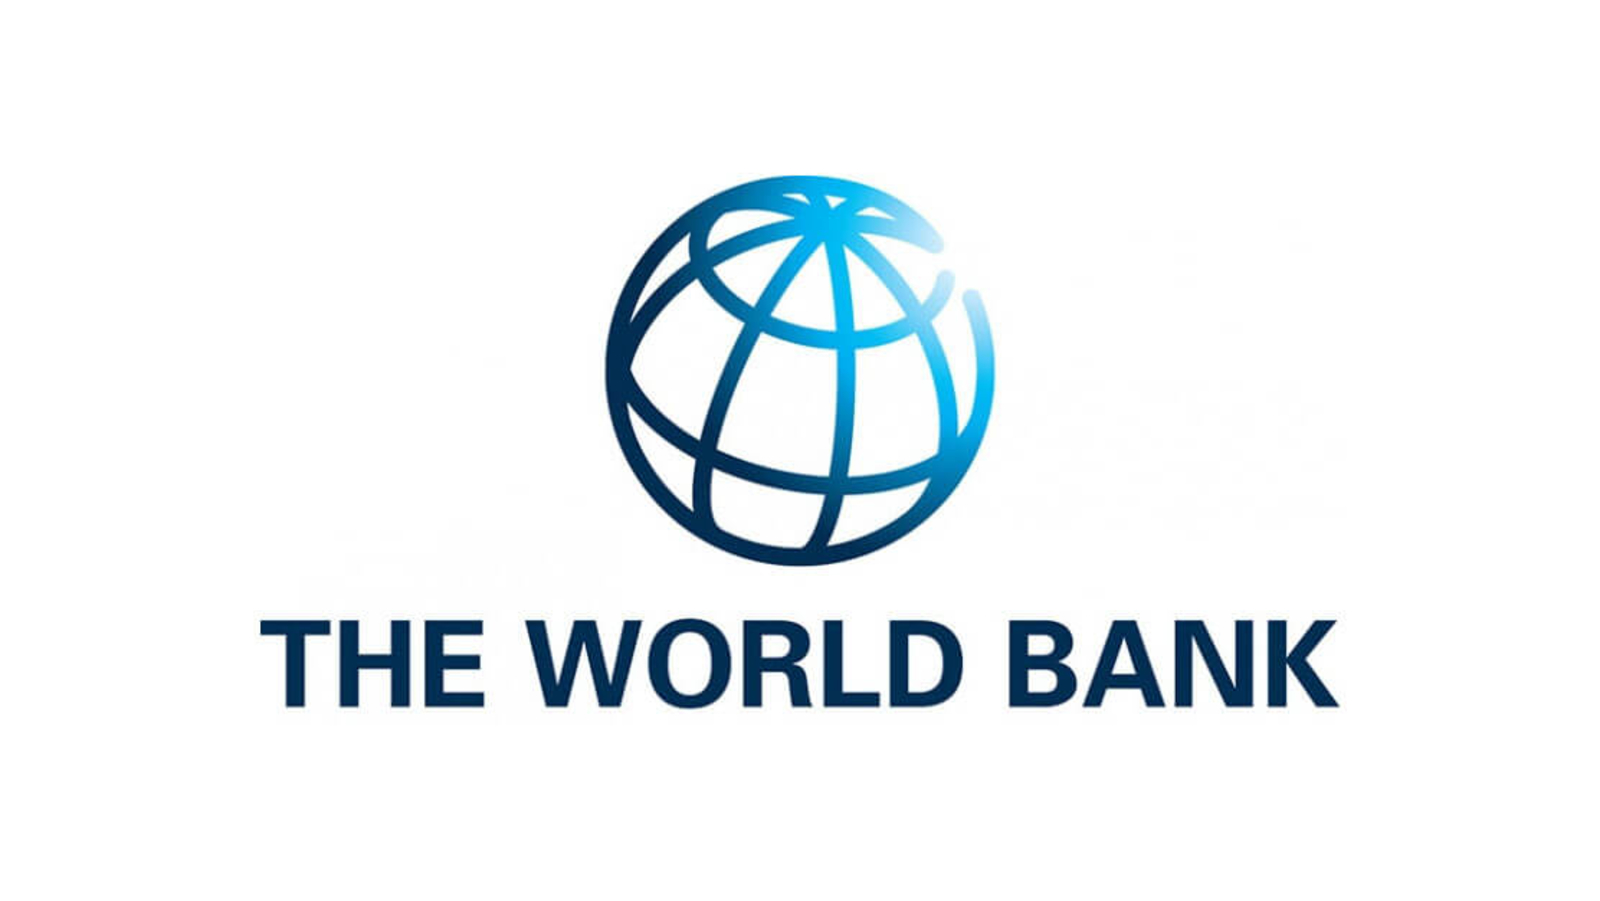 البنك الدولي يوافق على قرضين بقيمة 520 مليون دولار لتونس لمواجهة تحديات الأمن الغذائي والتفاوت الجهوي